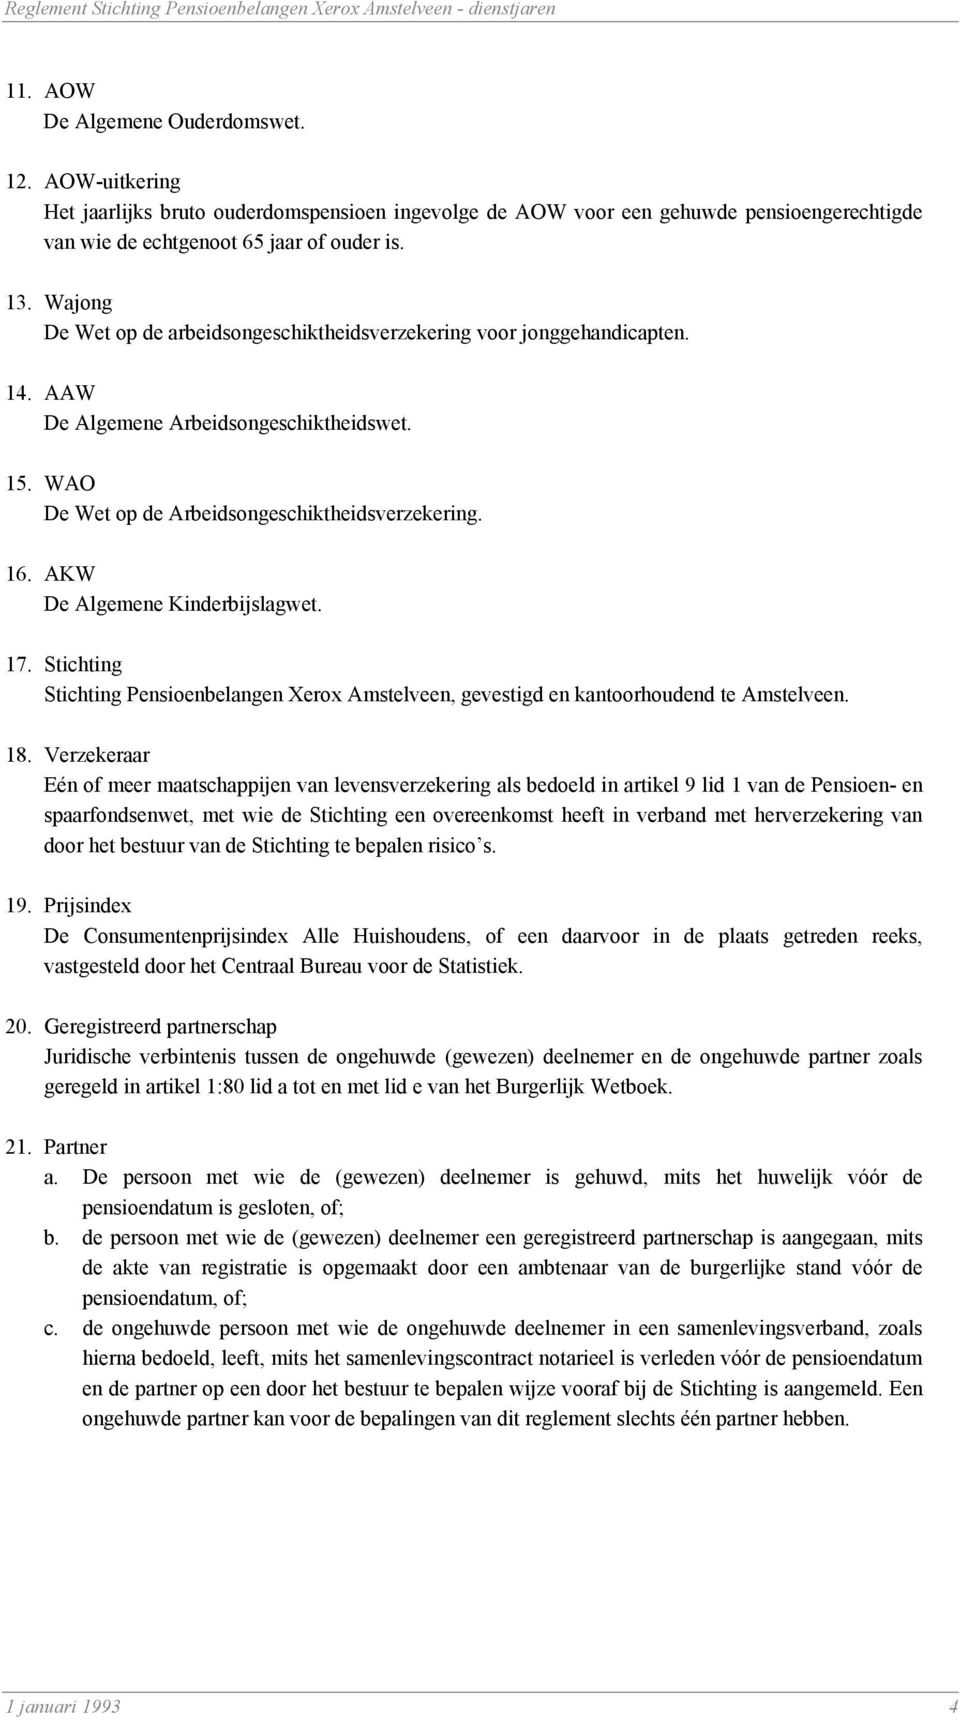 AKW De Algemene Kinderbijslagwet. 17. Stichting Stichting Pensioenbelangen Xerox Amstelveen, gevestigd en kantoorhoudend te Amstelveen. 18.